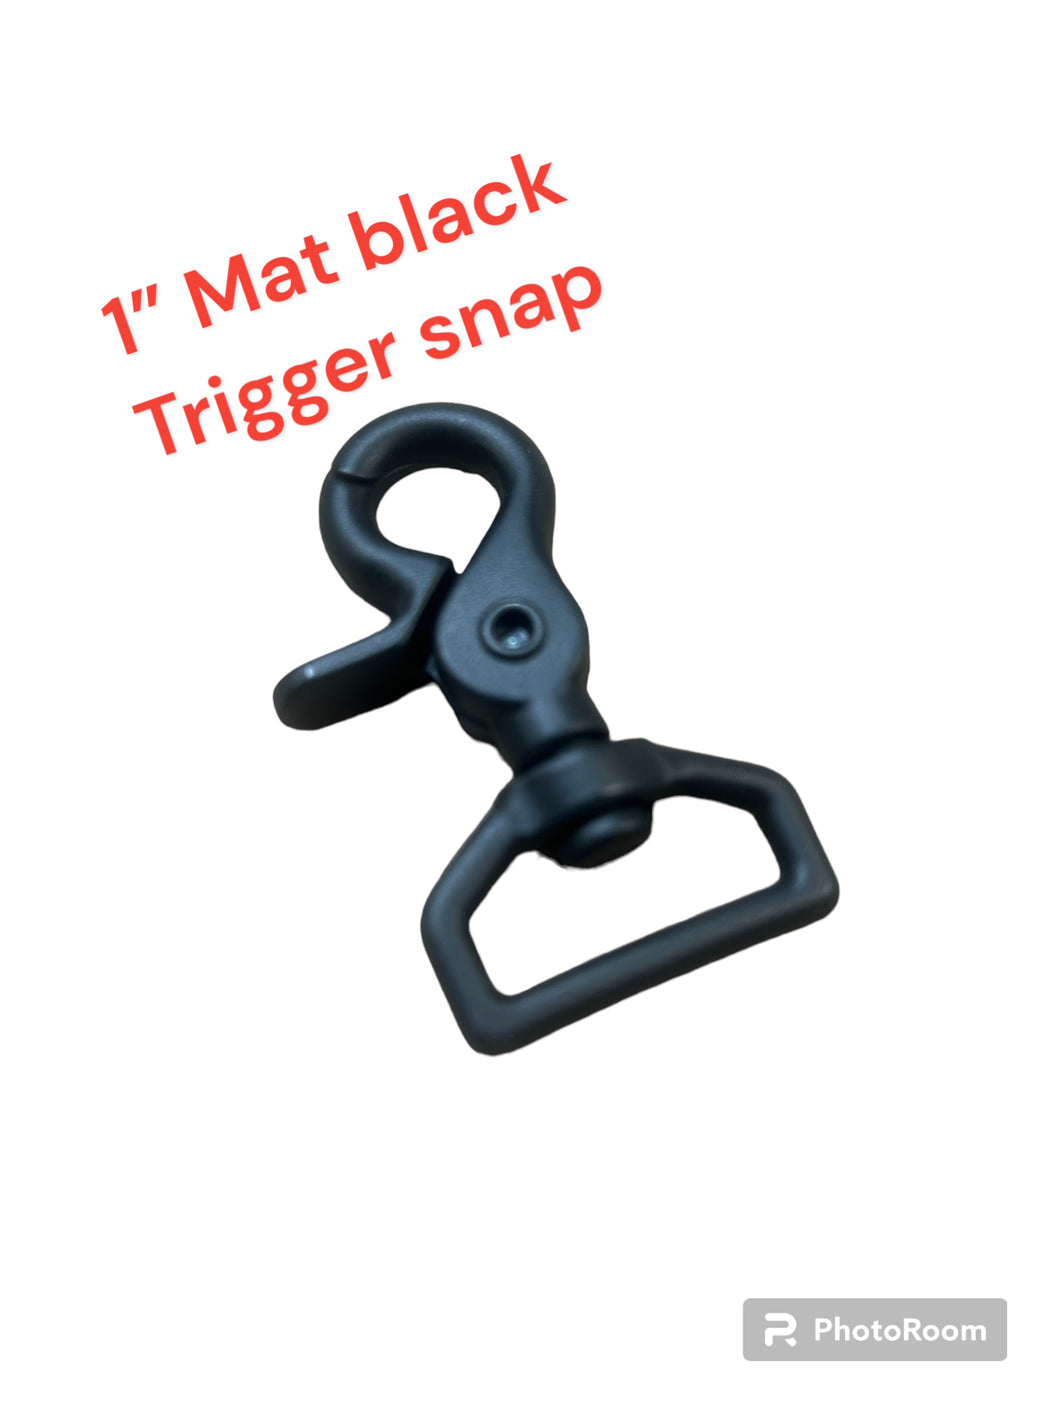 Trigger snap 1